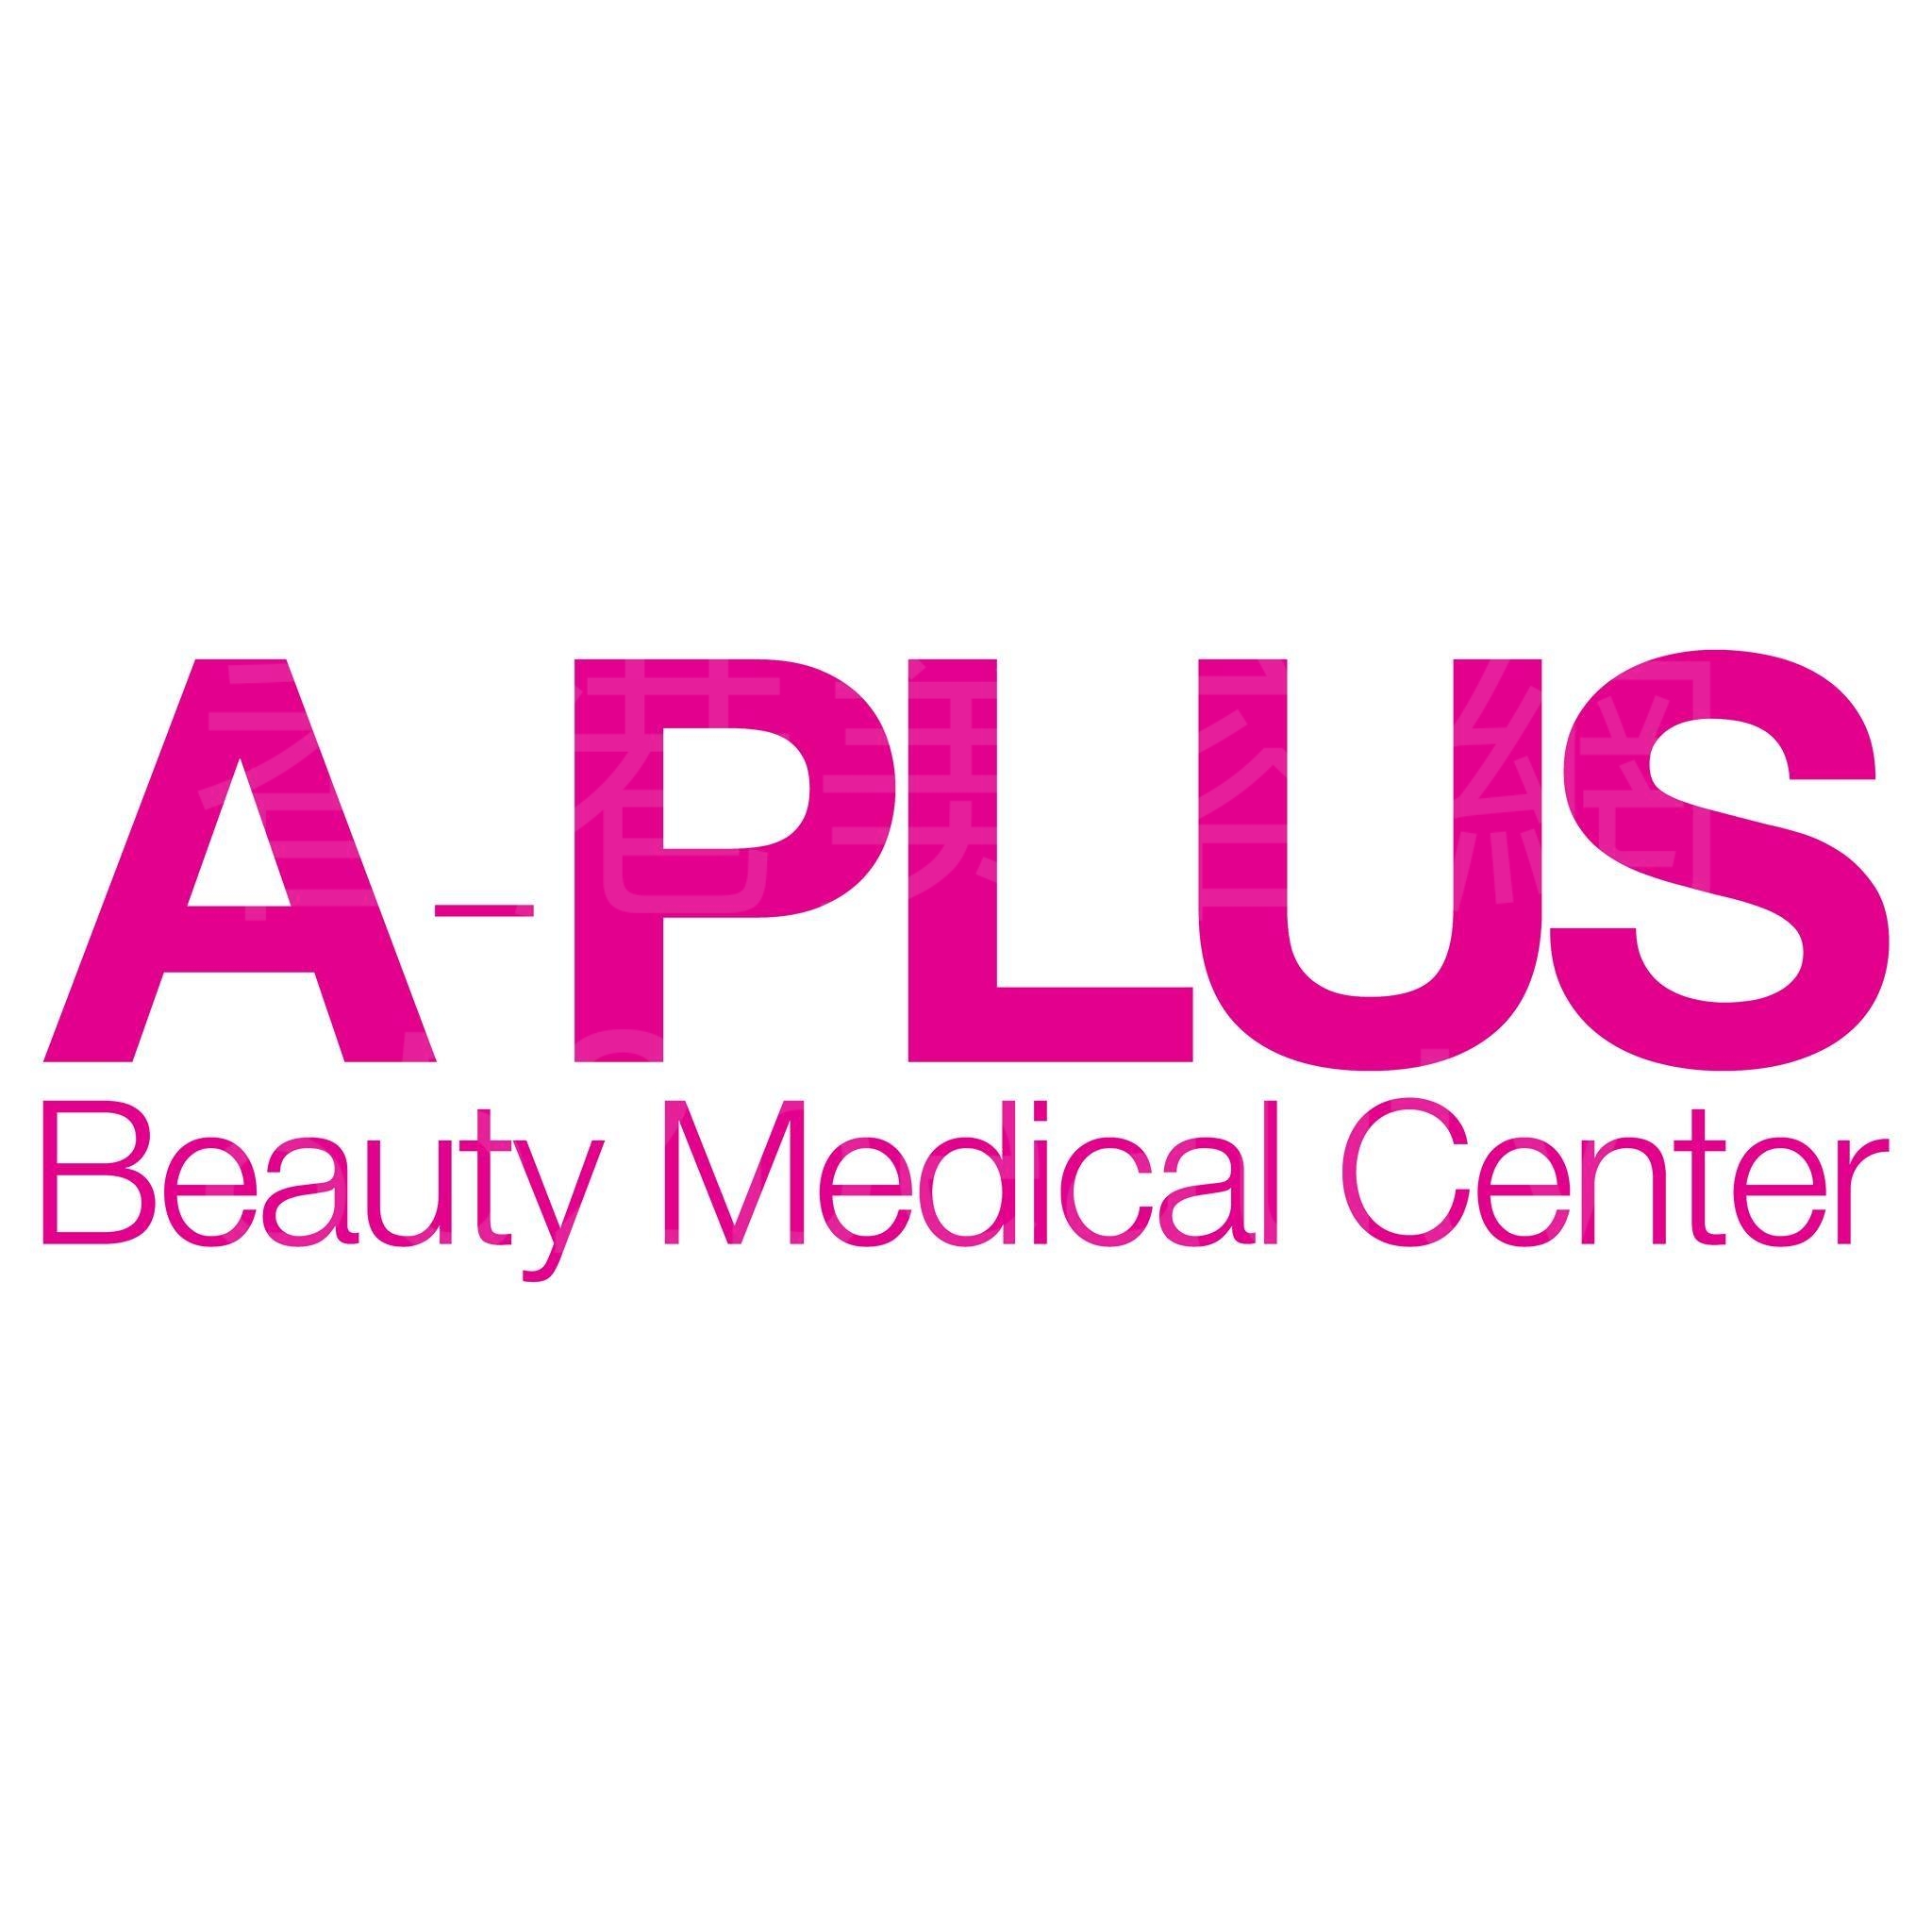 美容院: A-Plus Beauty Medical Center 醫學美容中心 (尖沙咀店)